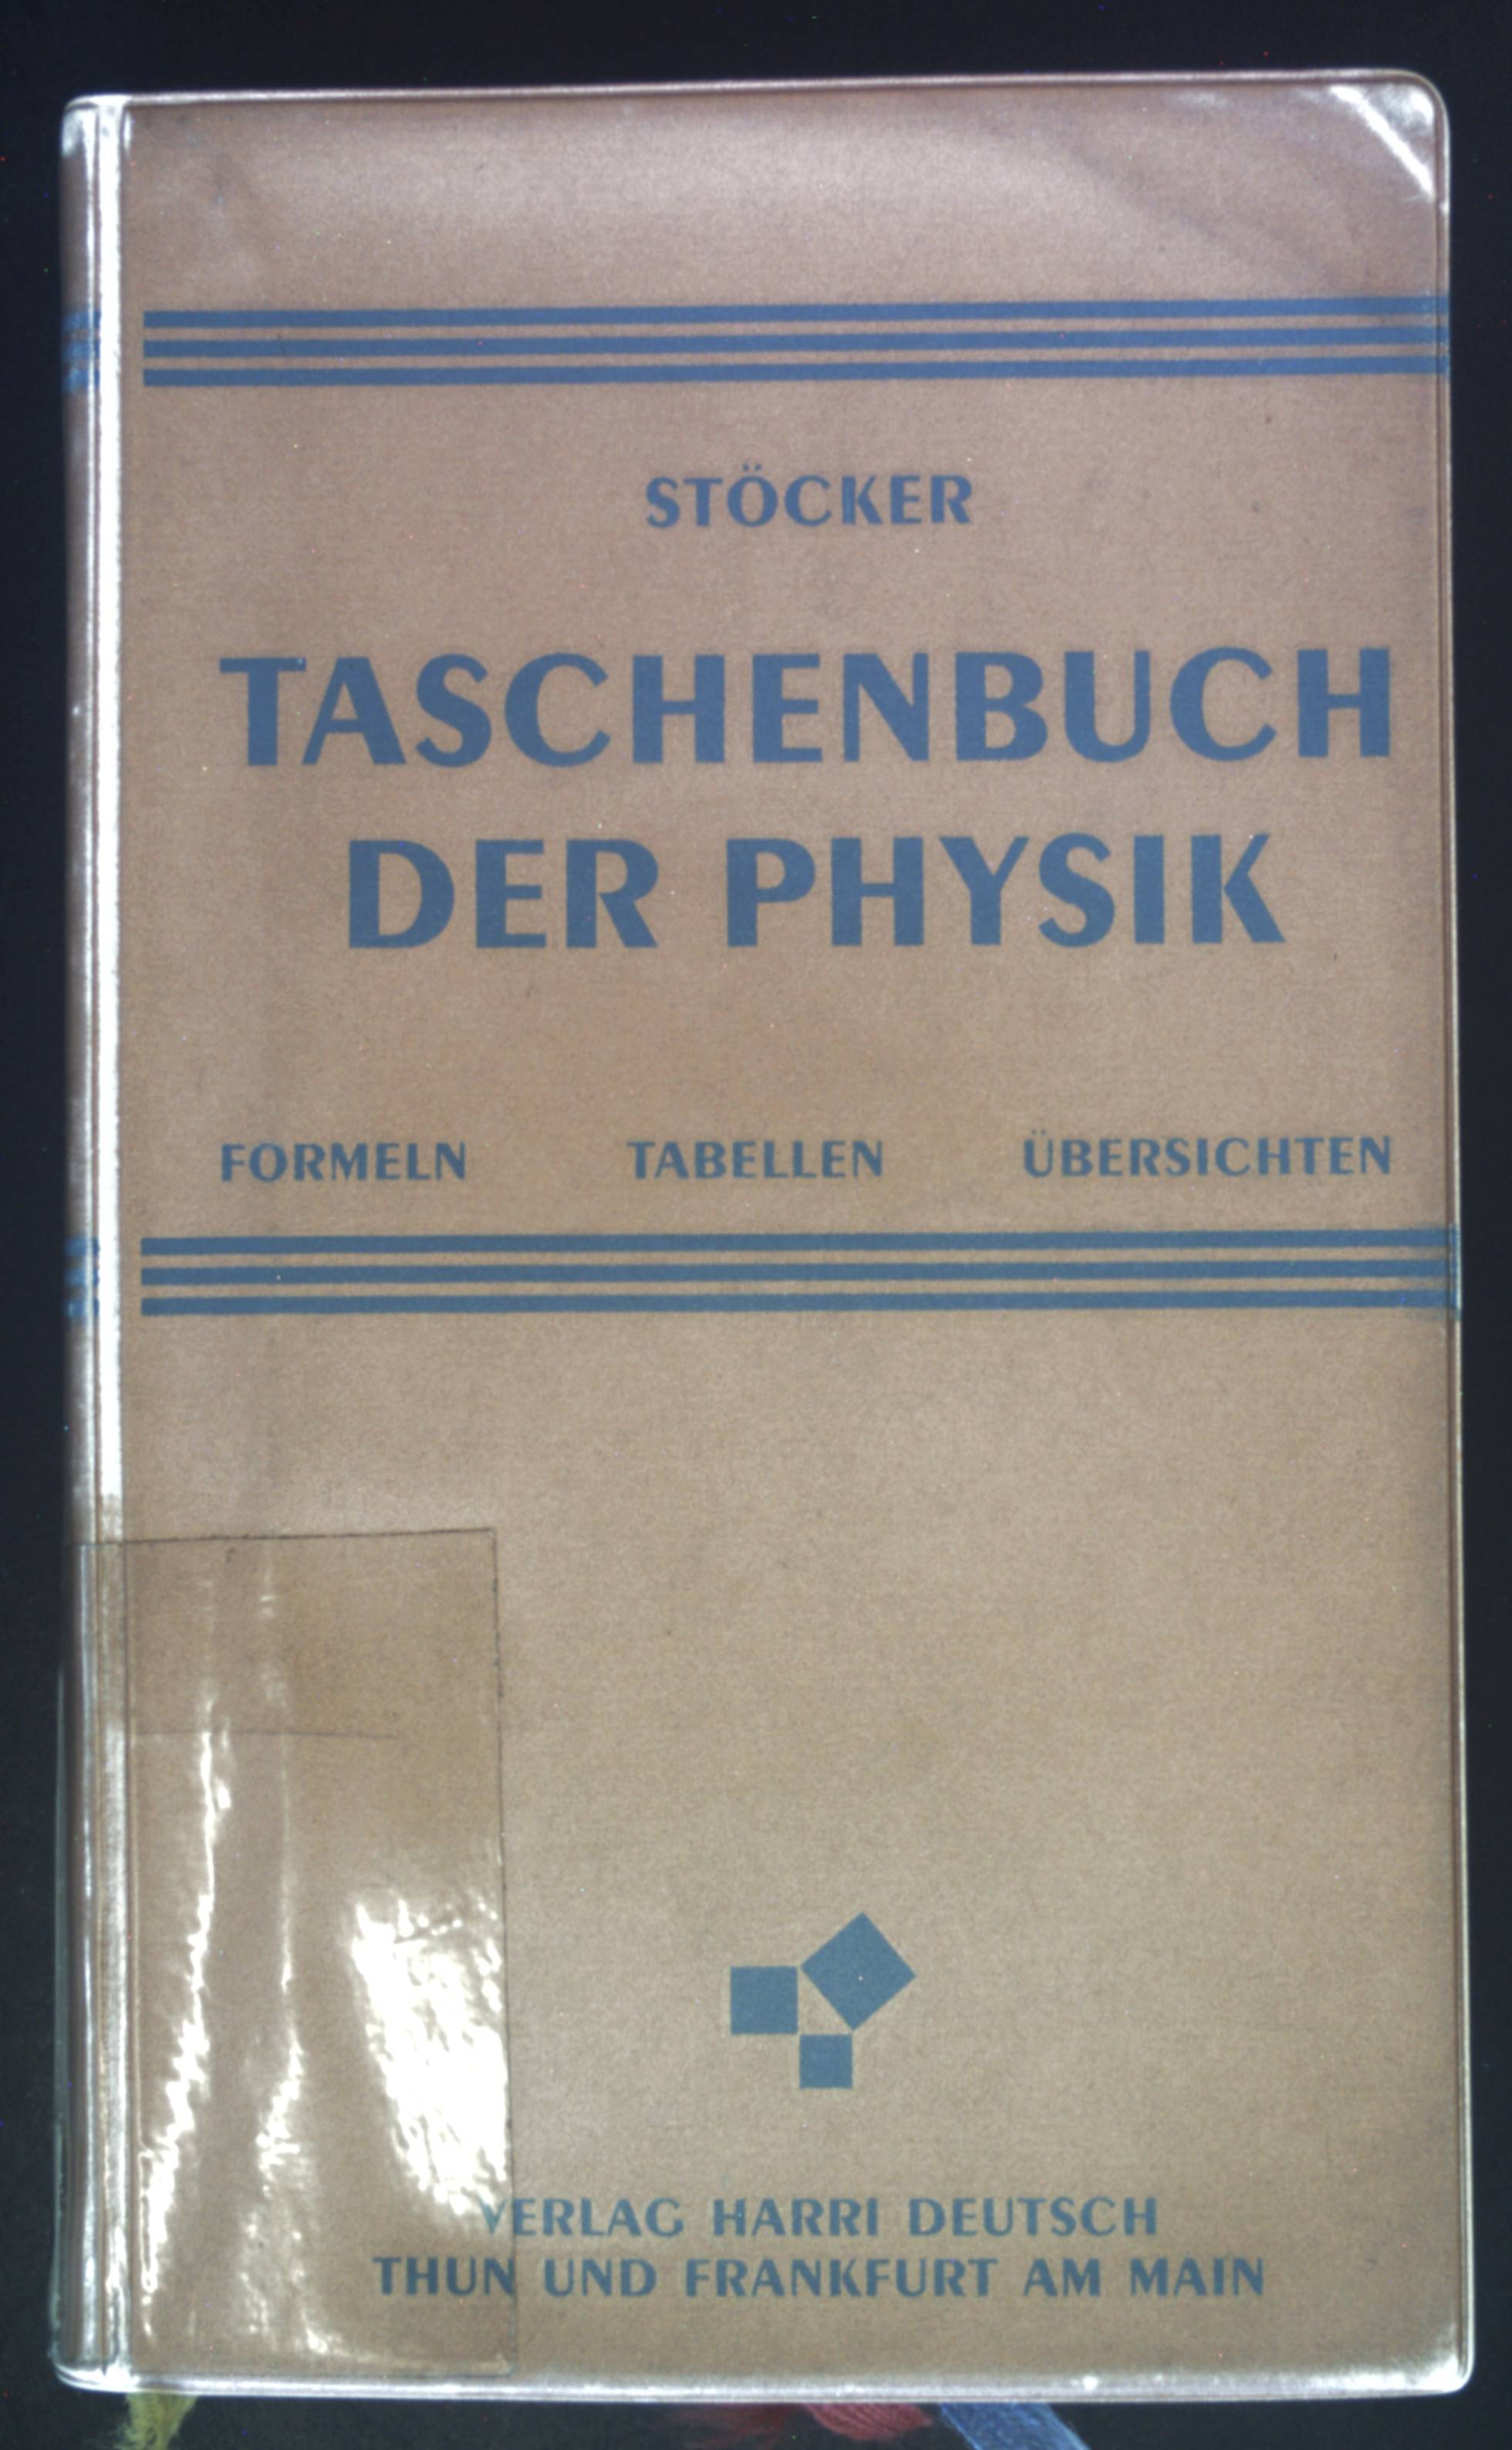 Taschenbuch der Physik : Formeln, Tabellen, Übersichten. - Stöcker, Horst